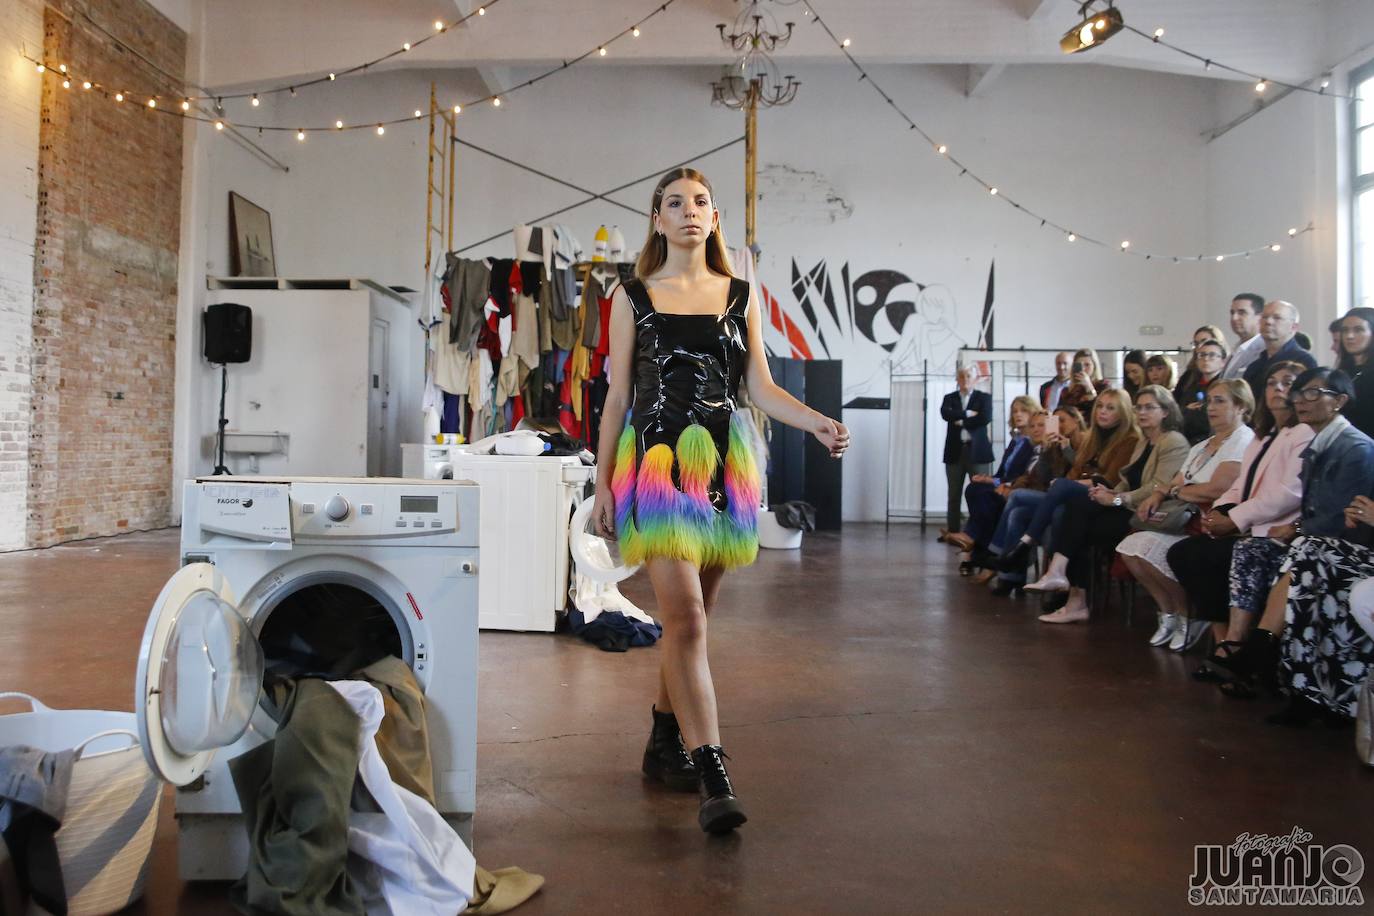 Las prendas que crea la joven diseñadora cántabra simbolizan sus inquietudes con una curiosa combinación de tejidos, formas y colores